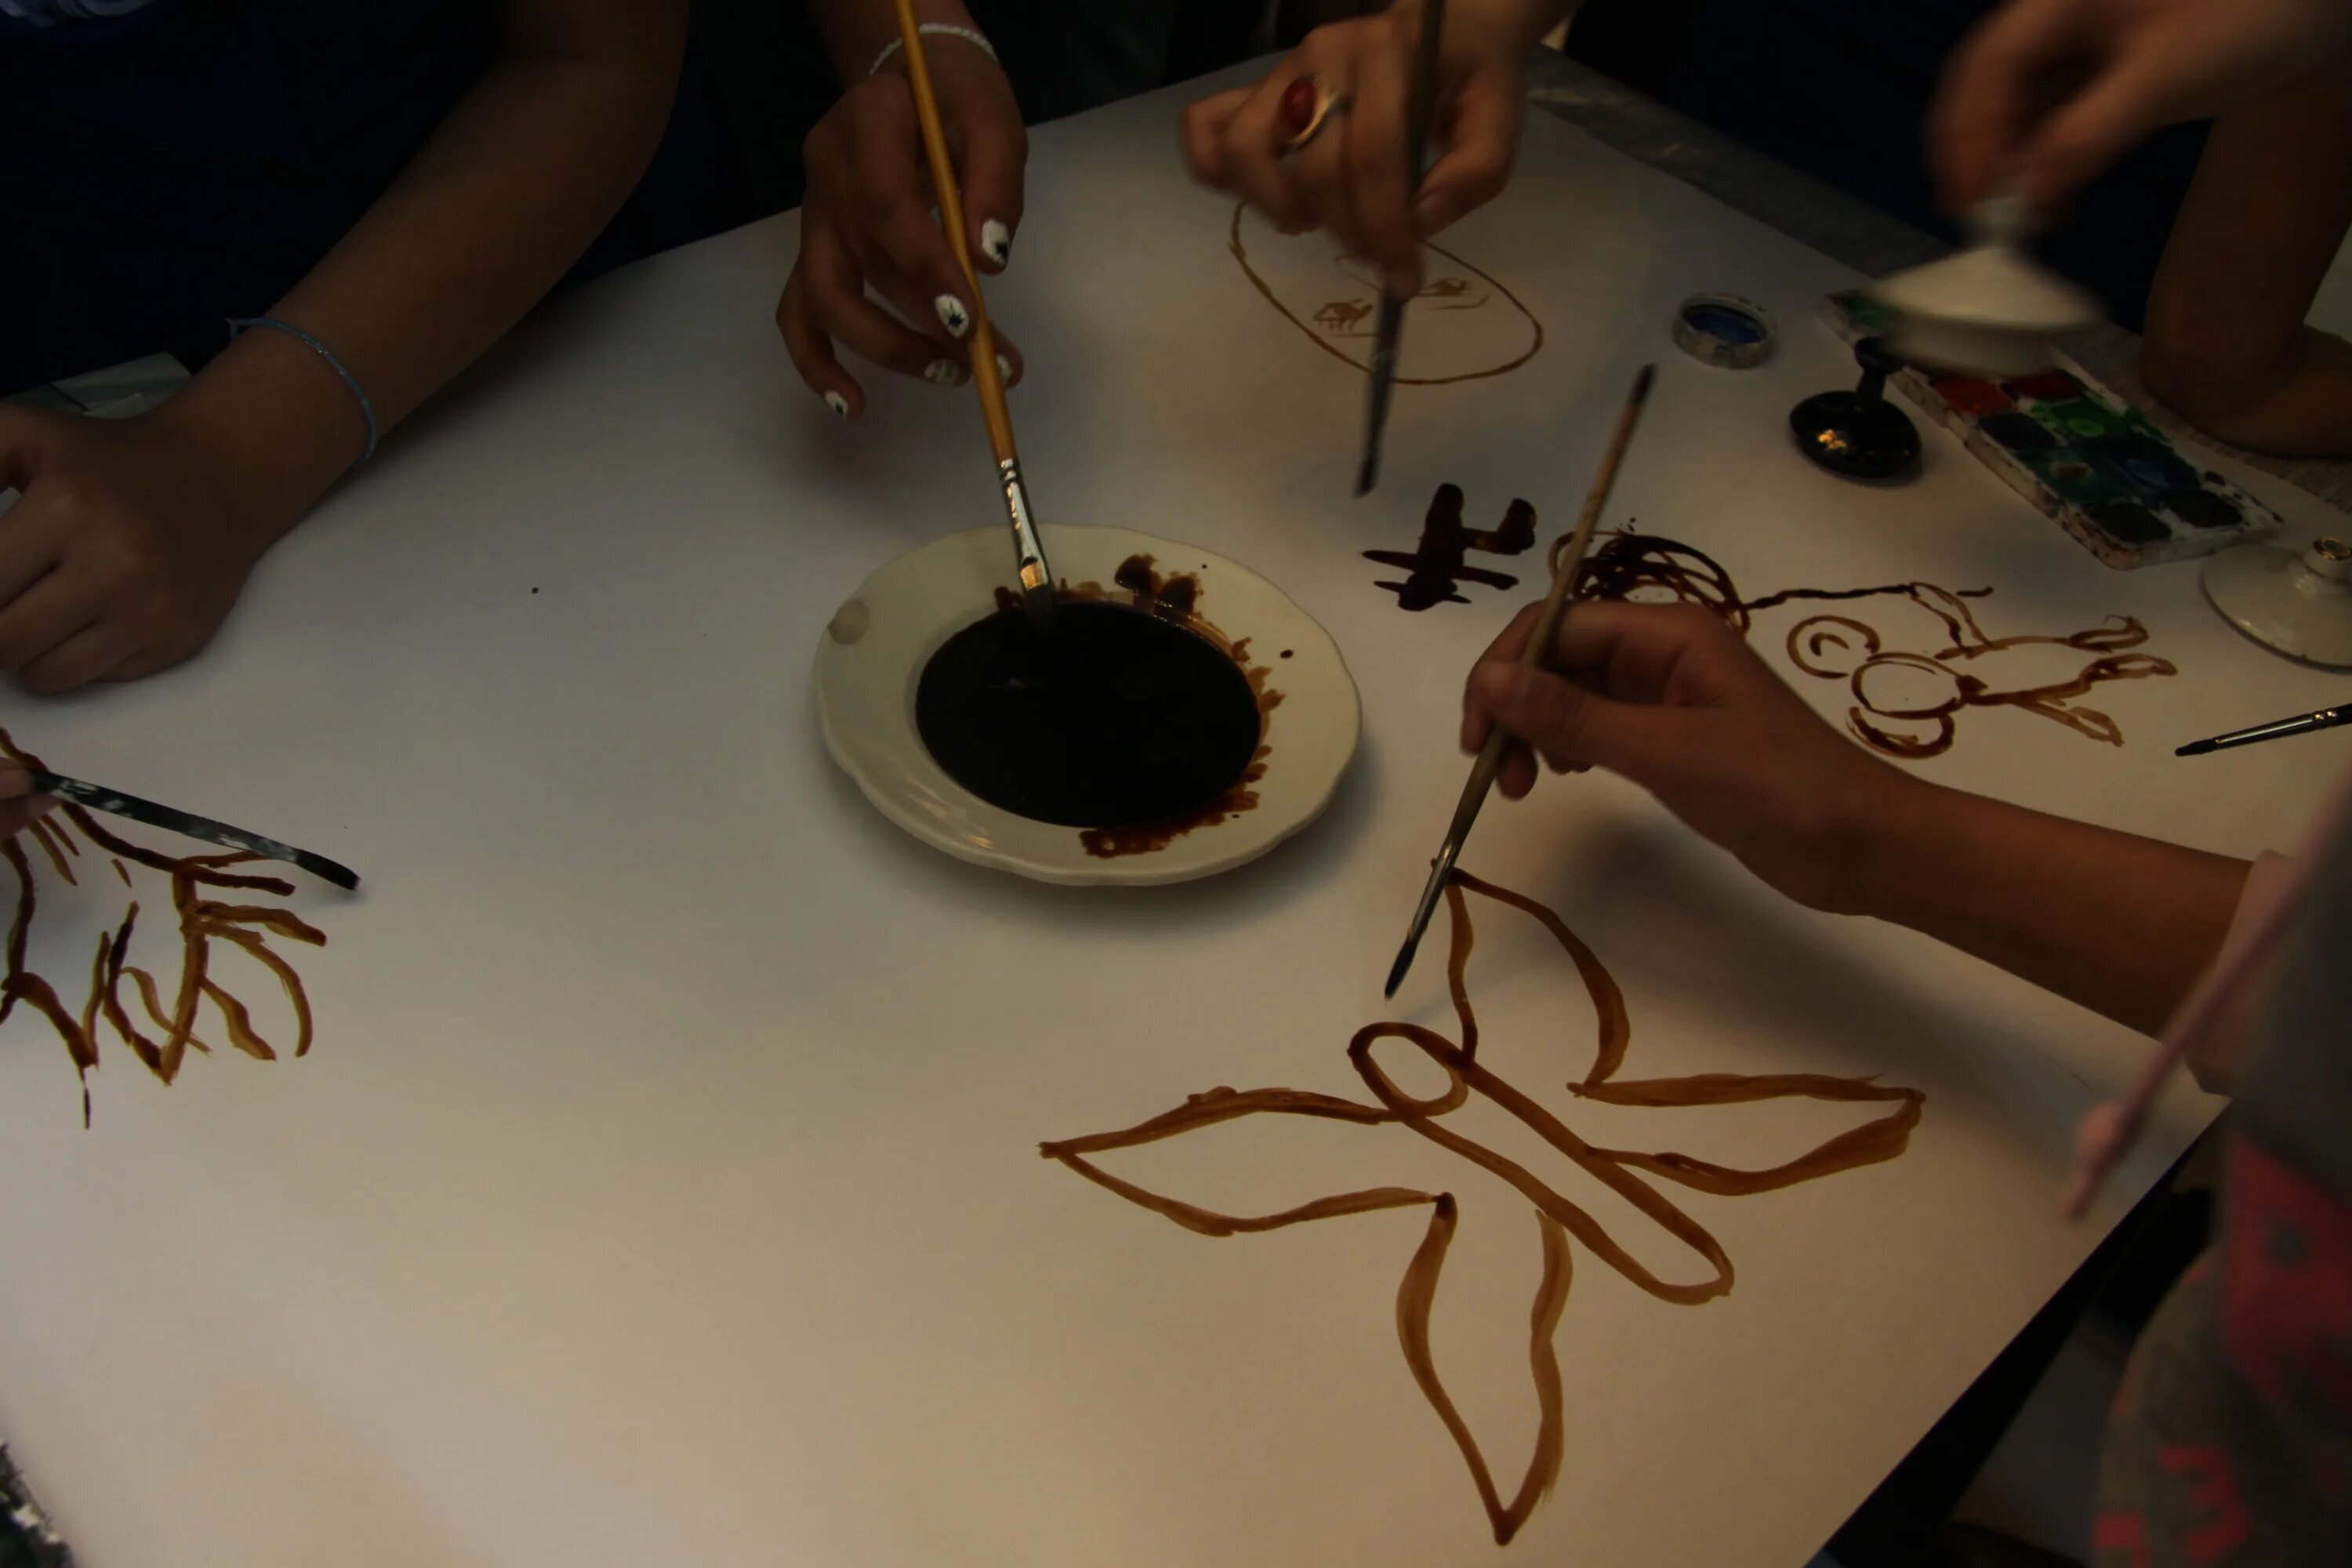 Как можно использовать иллюстрацию. Рисование кофе мастер класс для детей. Рисование кофе на бумаге для детей. Кофейная живопись для детей. Нетрадиционные техники рисования с помощью кофе.